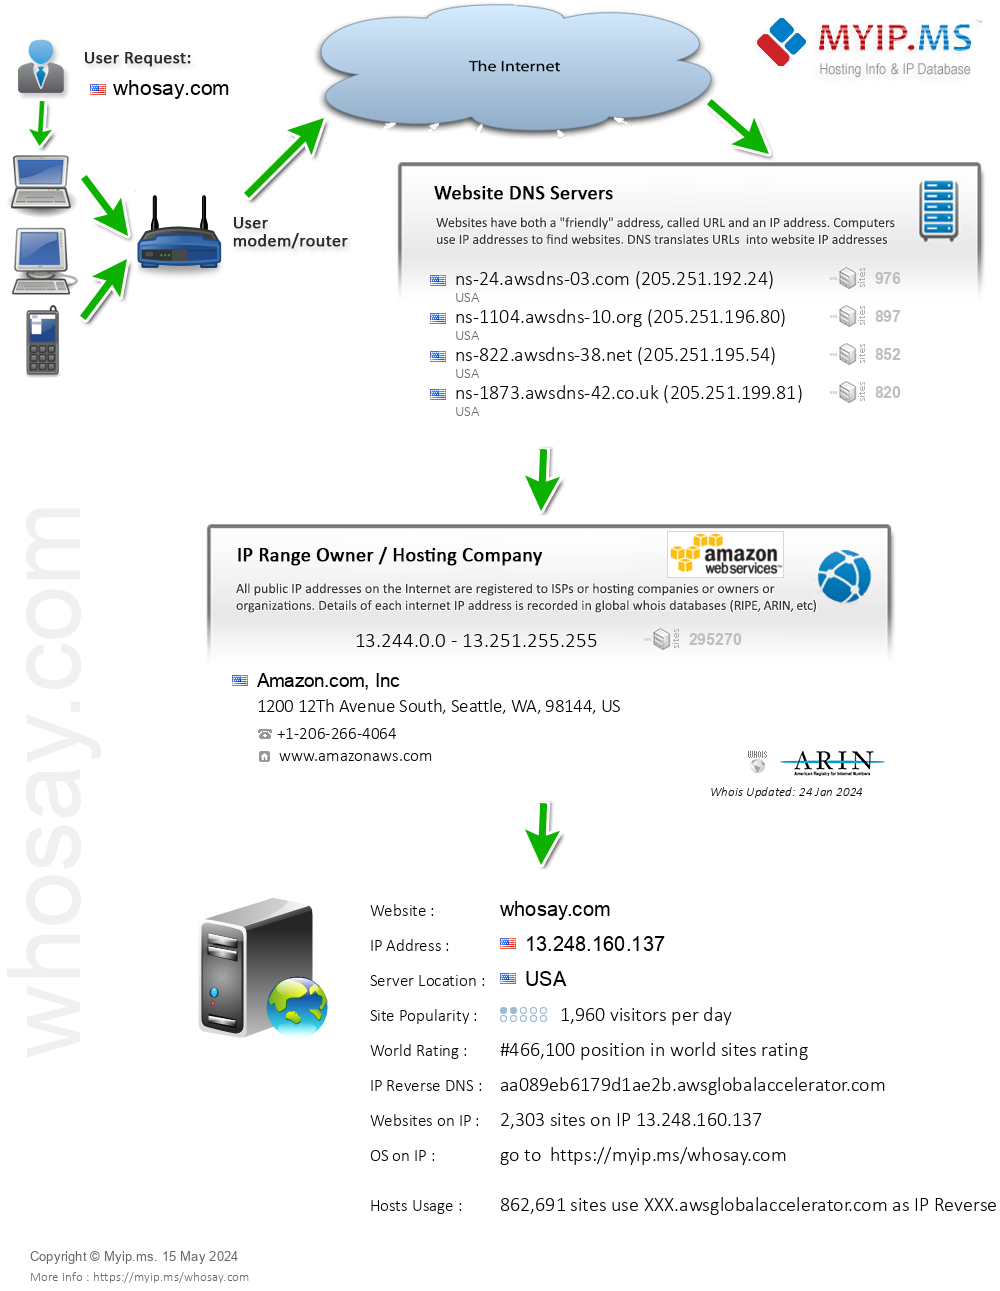 Whosay.com - Website Hosting Visual IP Diagram